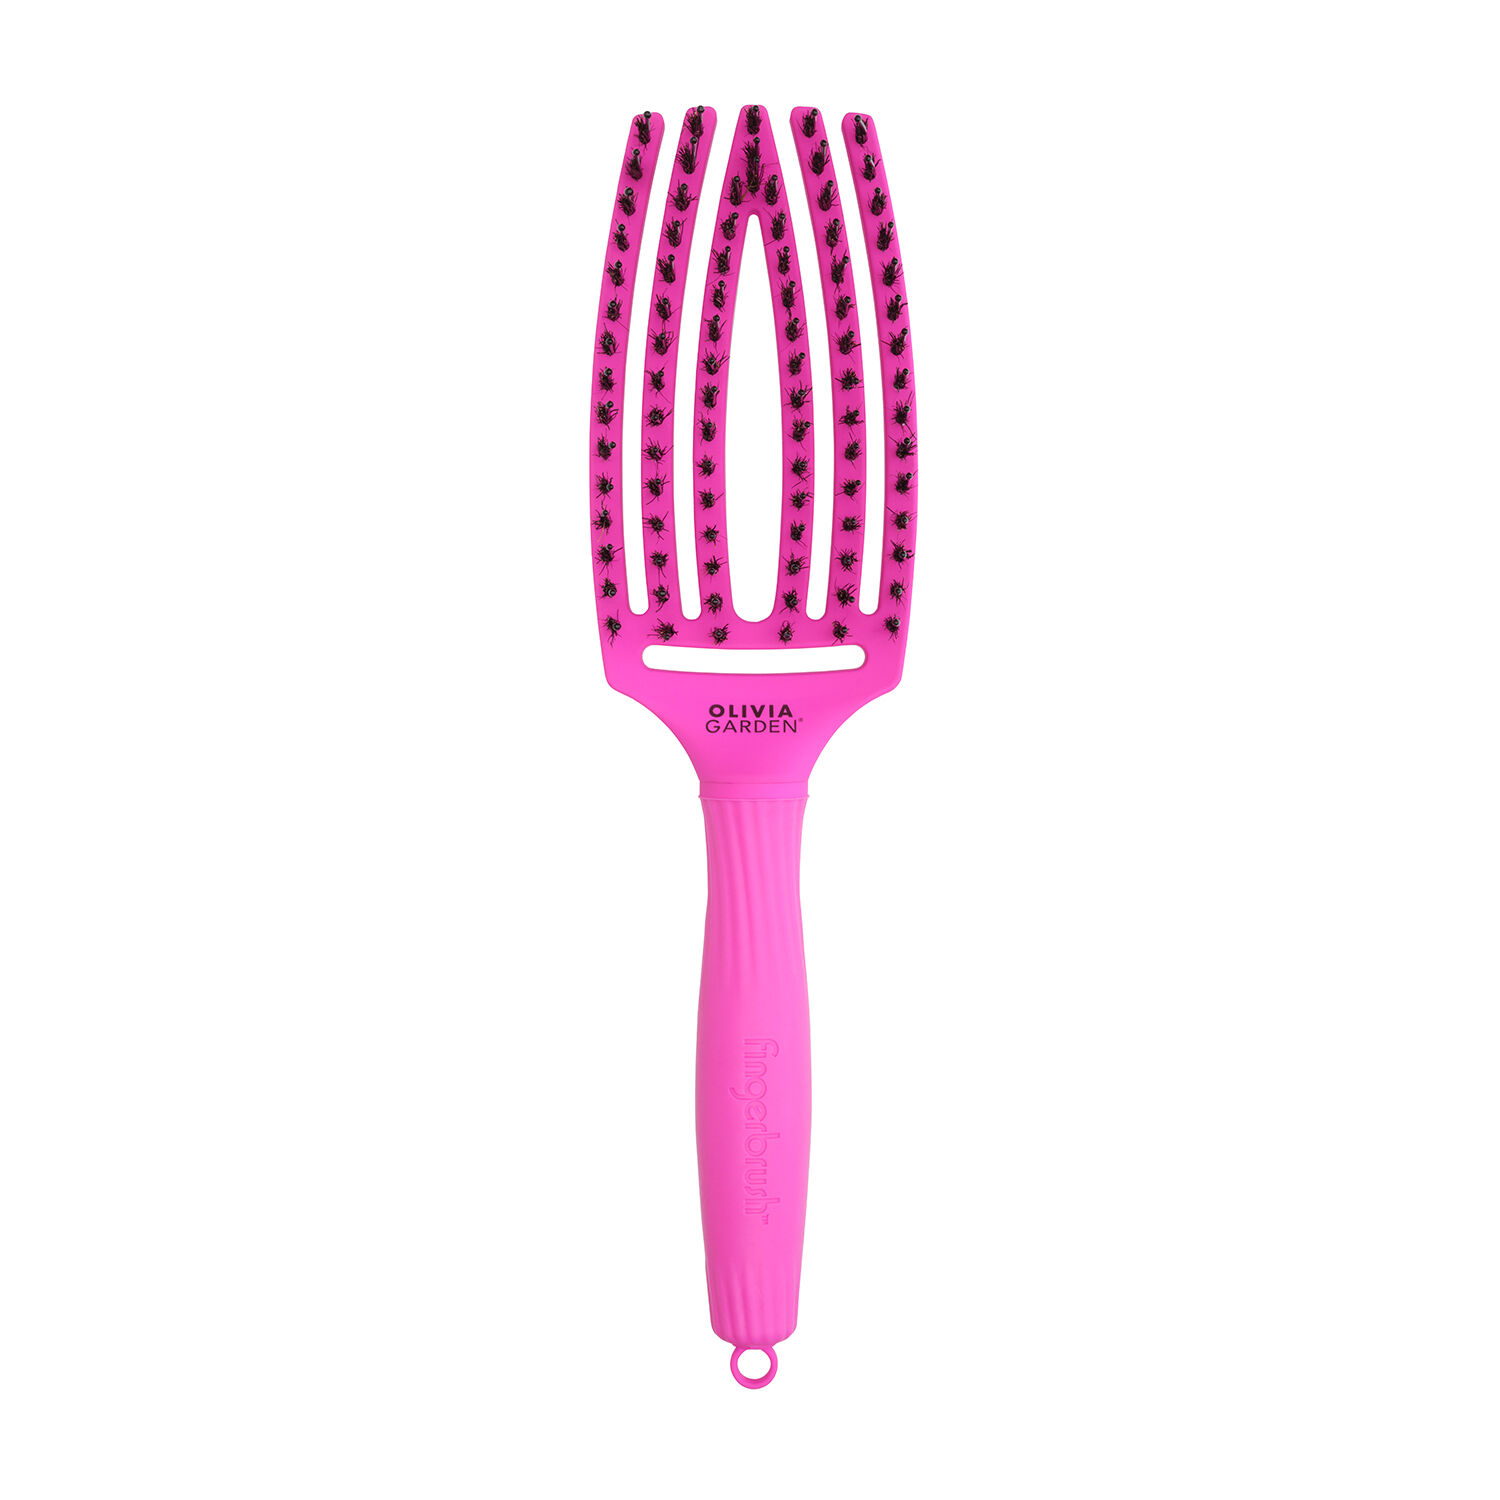 Неоново-фиолетовая расческа Olivia Garden Fingerbrush, 1 шт.